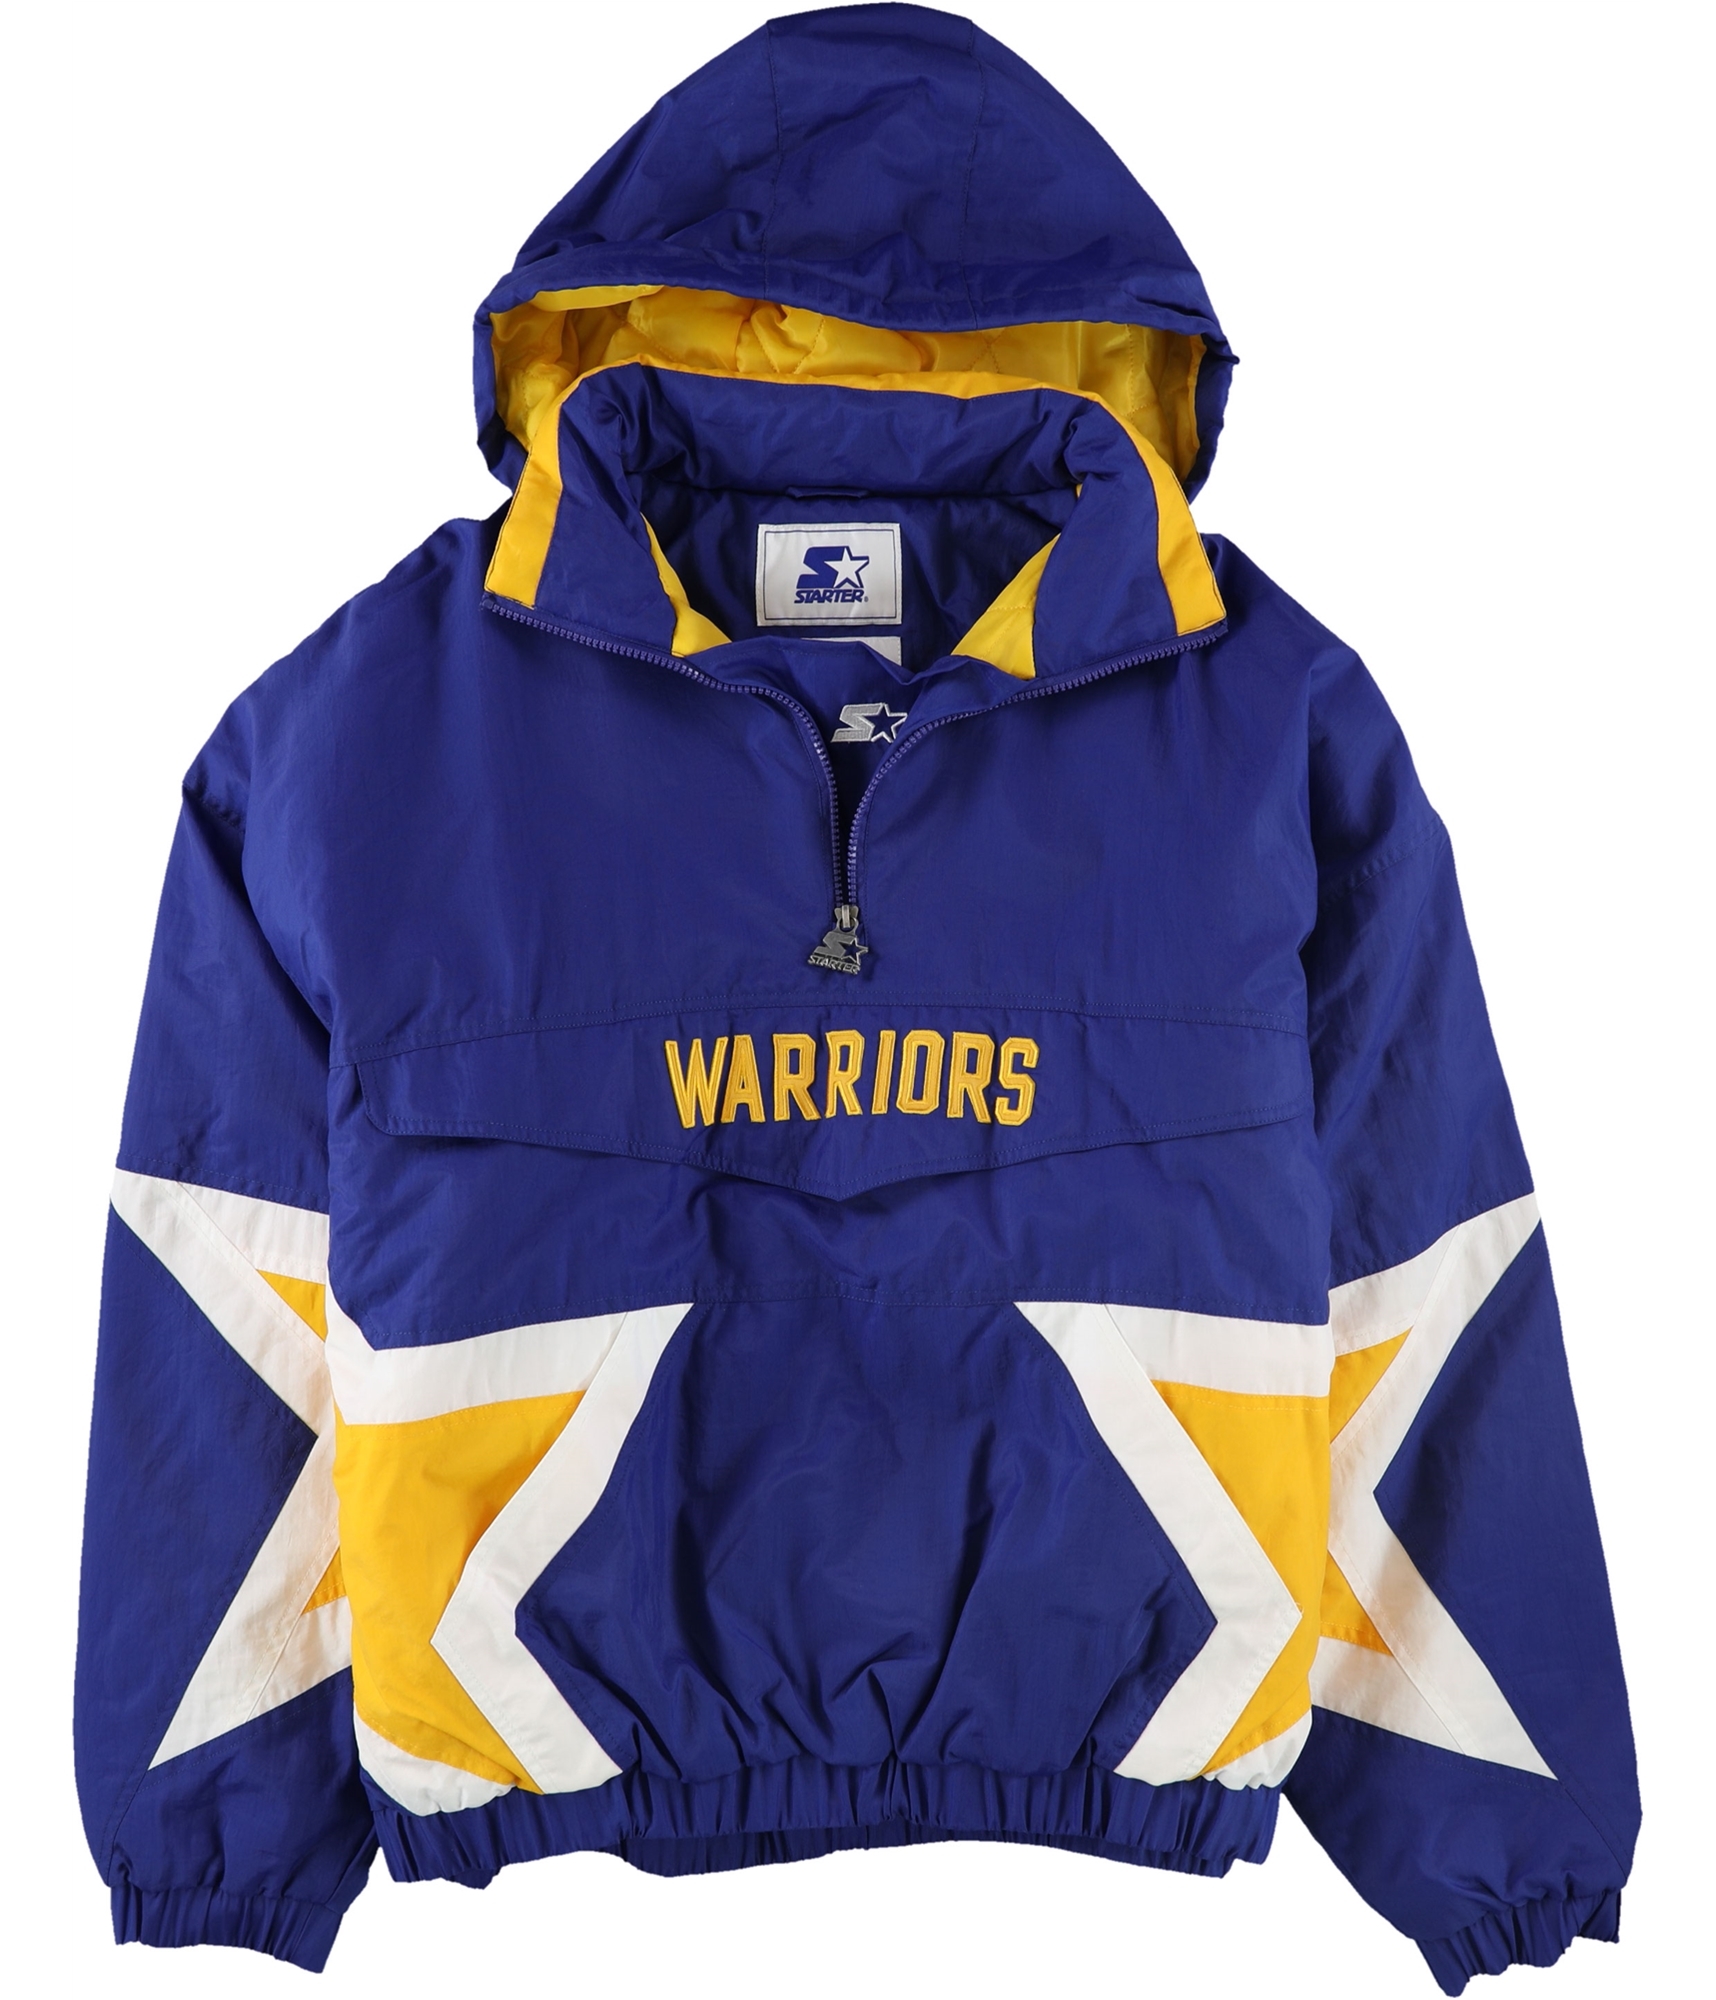 warriors mens jacket